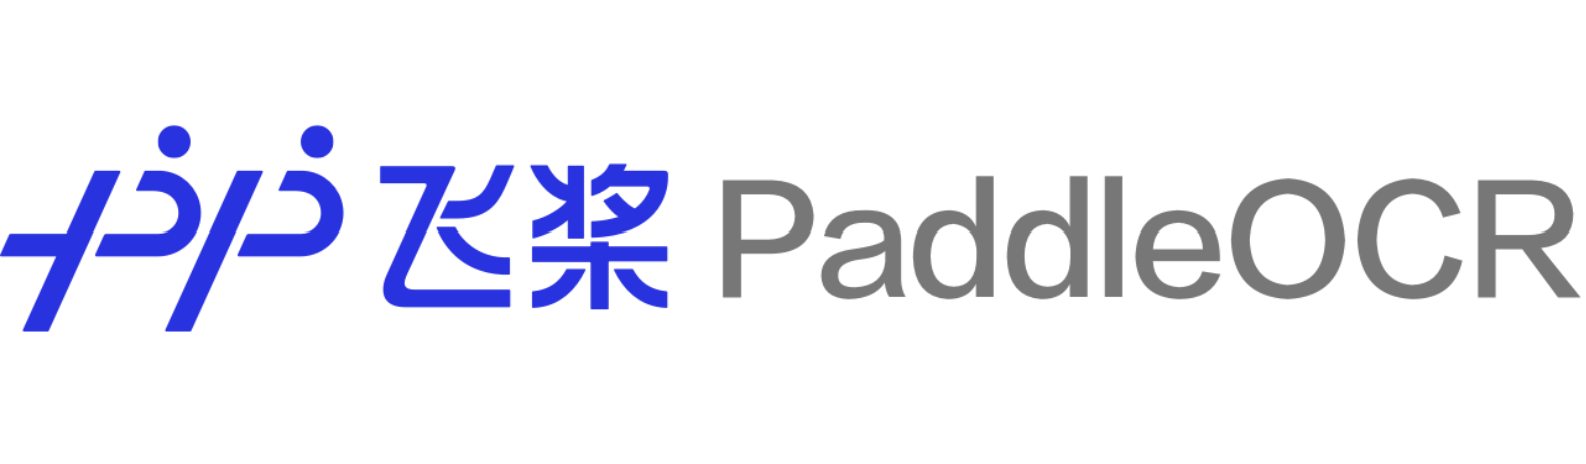 PaddleOCR_log.png